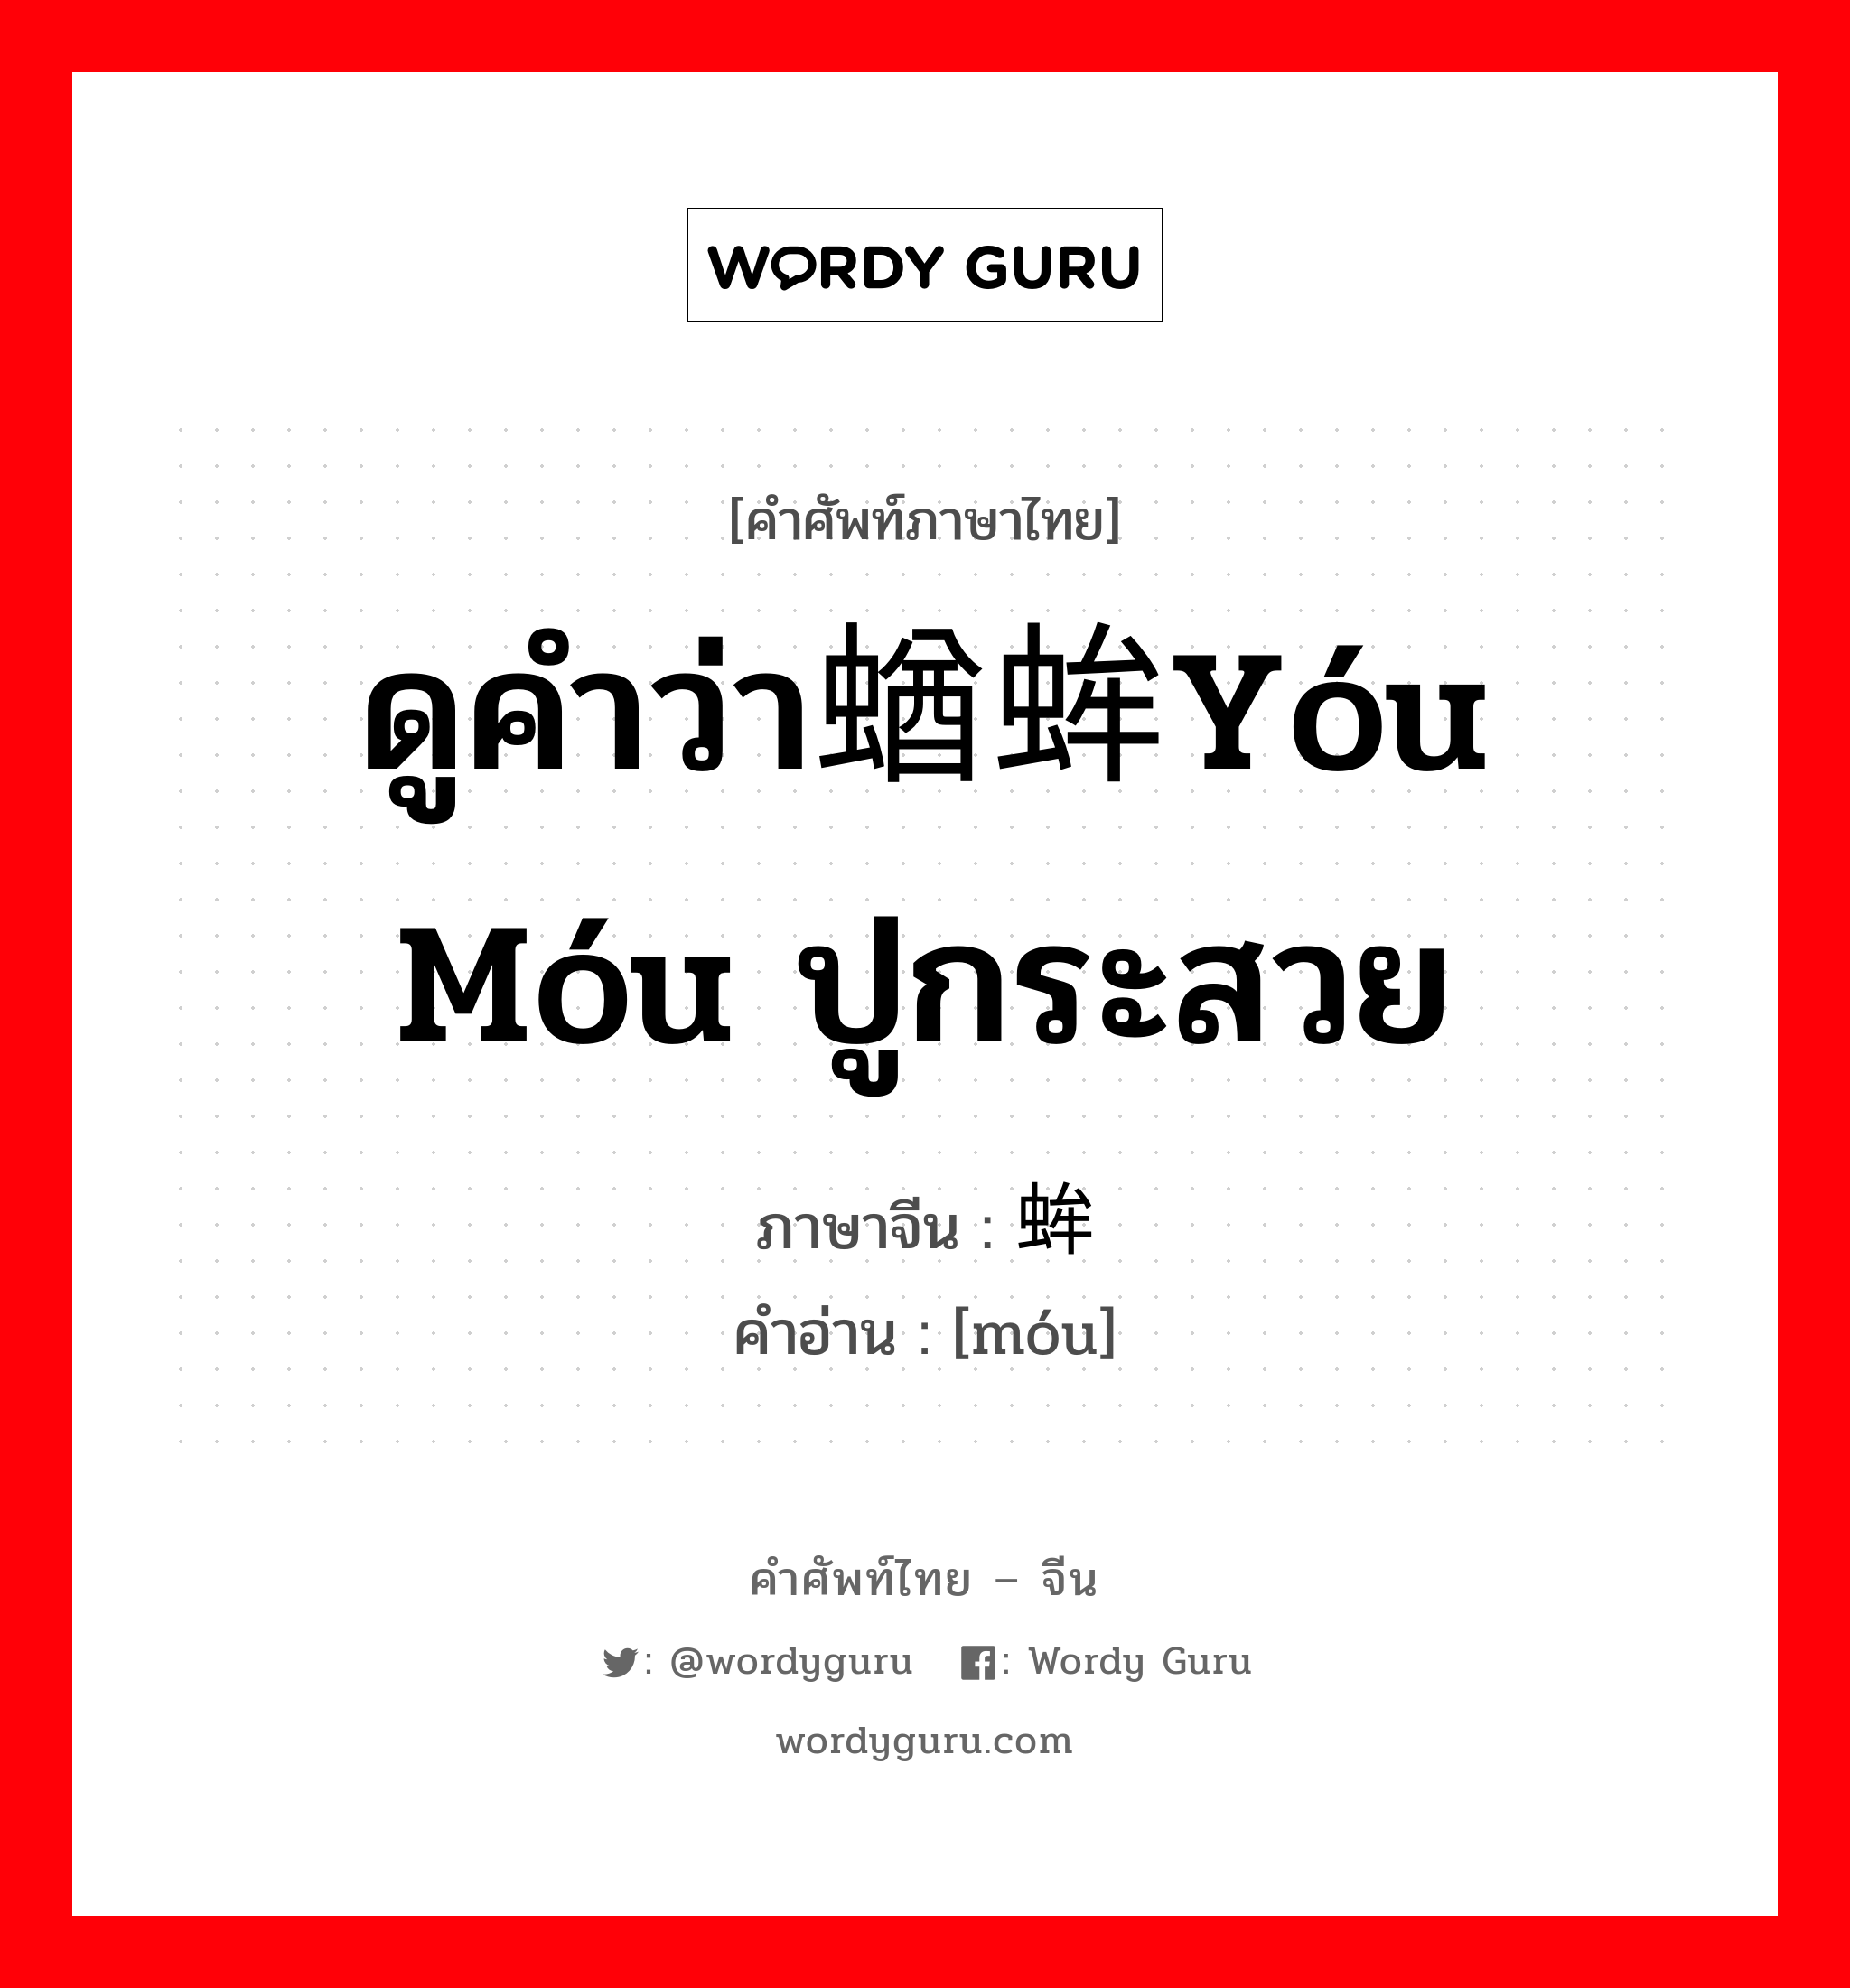 ดูคำว่า蝤蛑yóu móu ปูกระสวย ภาษาจีนคืออะไร, คำศัพท์ภาษาไทย - จีน ดูคำว่า蝤蛑yóu móu ปูกระสวย ภาษาจีน 蛑 คำอ่าน [móu]